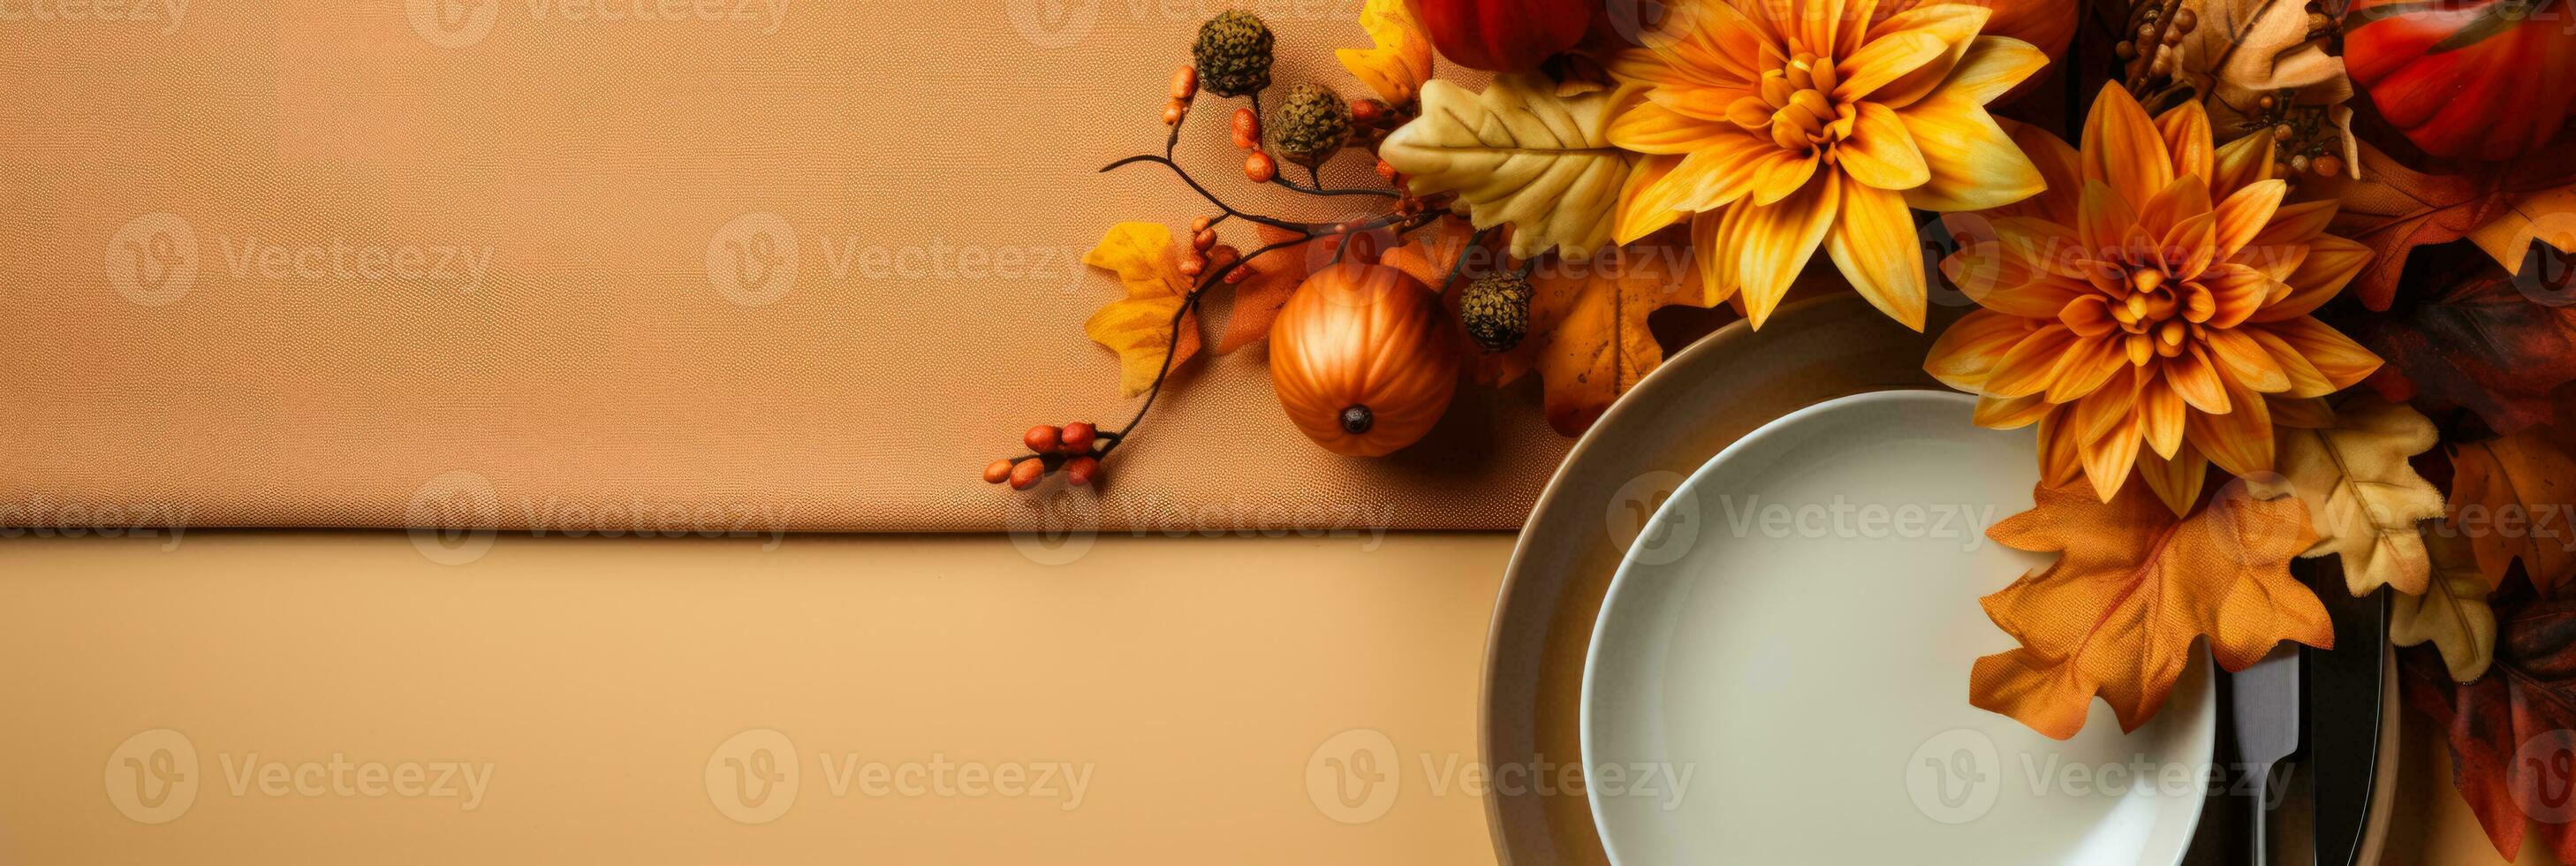 klassisch das Erntedankfest Tabelle die Einstellungen im Honig Gold Töne Hintergrund mit leeren Raum zum Text foto